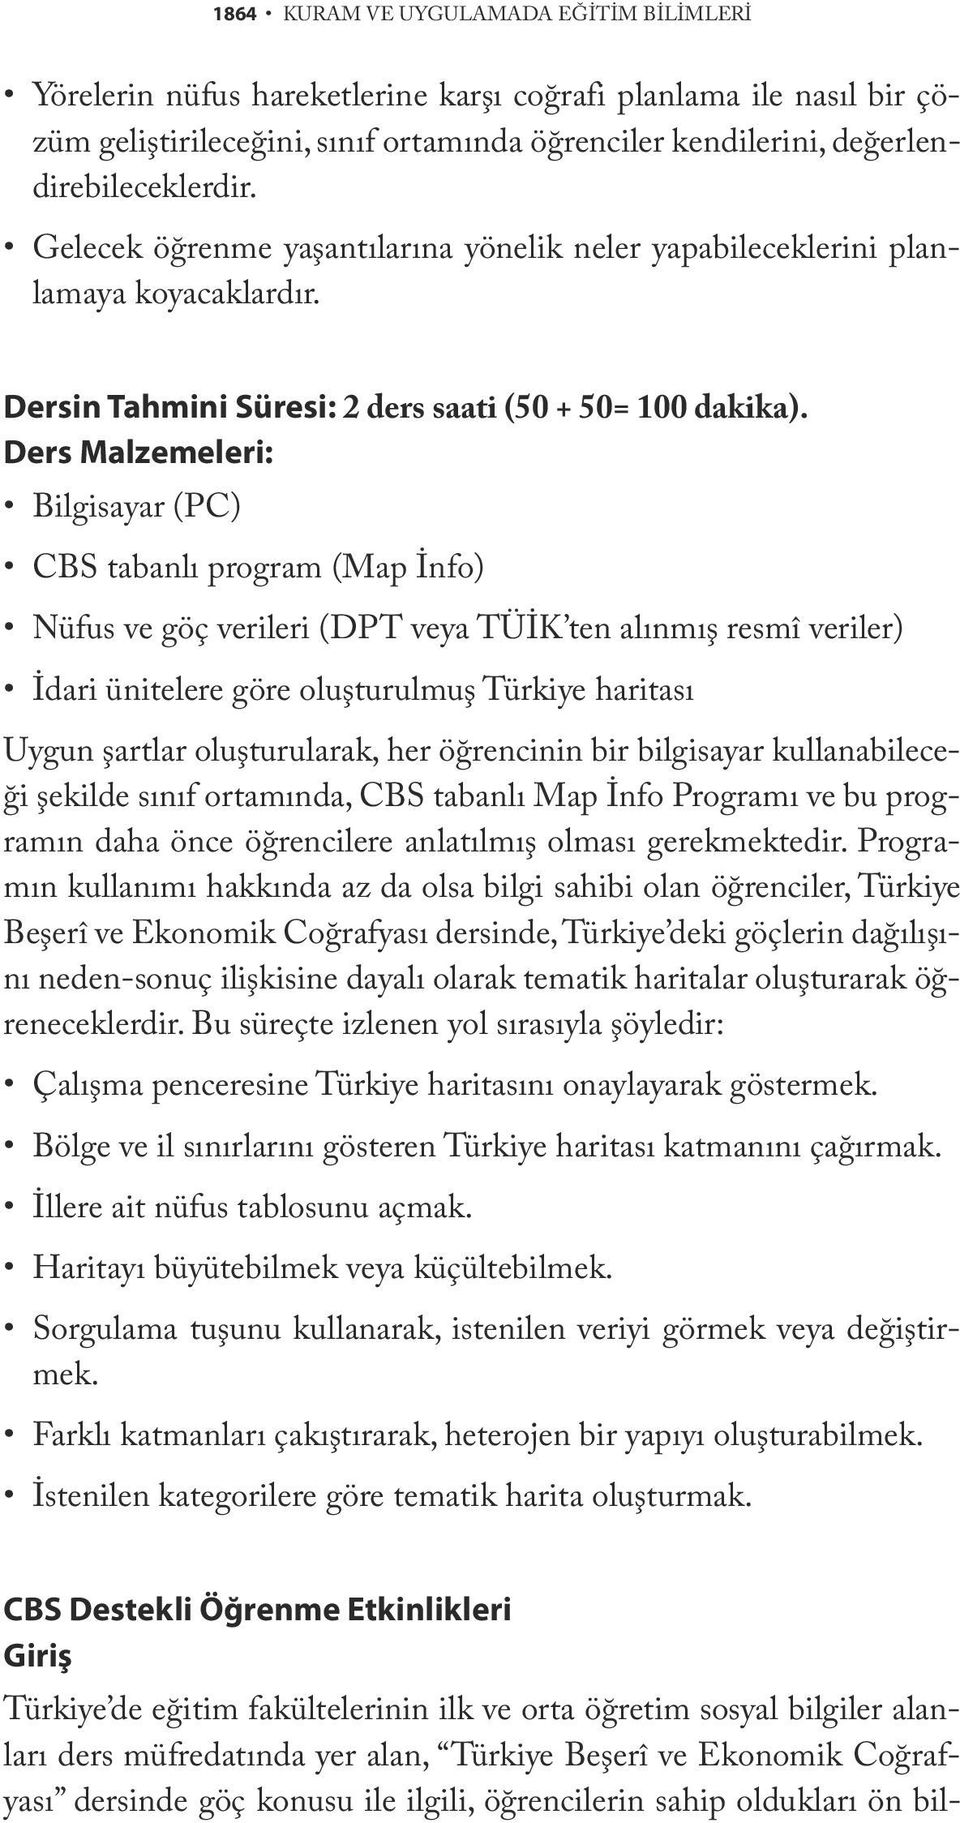 Ders Malzemeleri: Bilgisayar (PC) CBS tabanlı program (Map İnfo) Nüfus ve göç verileri (DPT veya TÜİK ten alınmış resmî veriler) İdari ünitelere göre oluşturulmuş Türkiye haritası Uygun şartlar